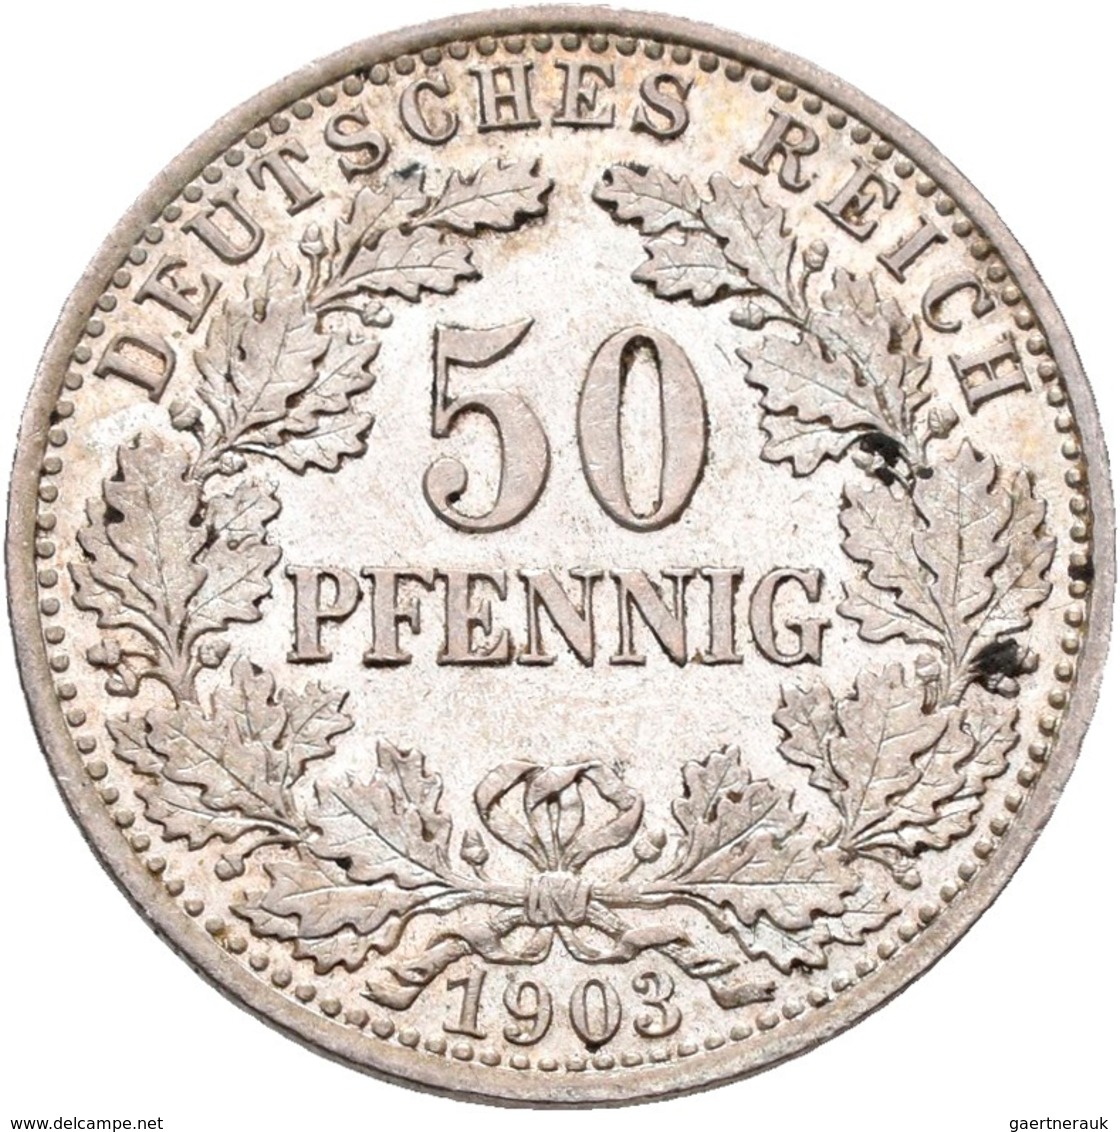 Umlaufmünzen 1 Pf. - 1 Mark: 50 Pfennig 1903 A, Jaeger 15, Vorzüglich. - Taler Et Doppeltaler